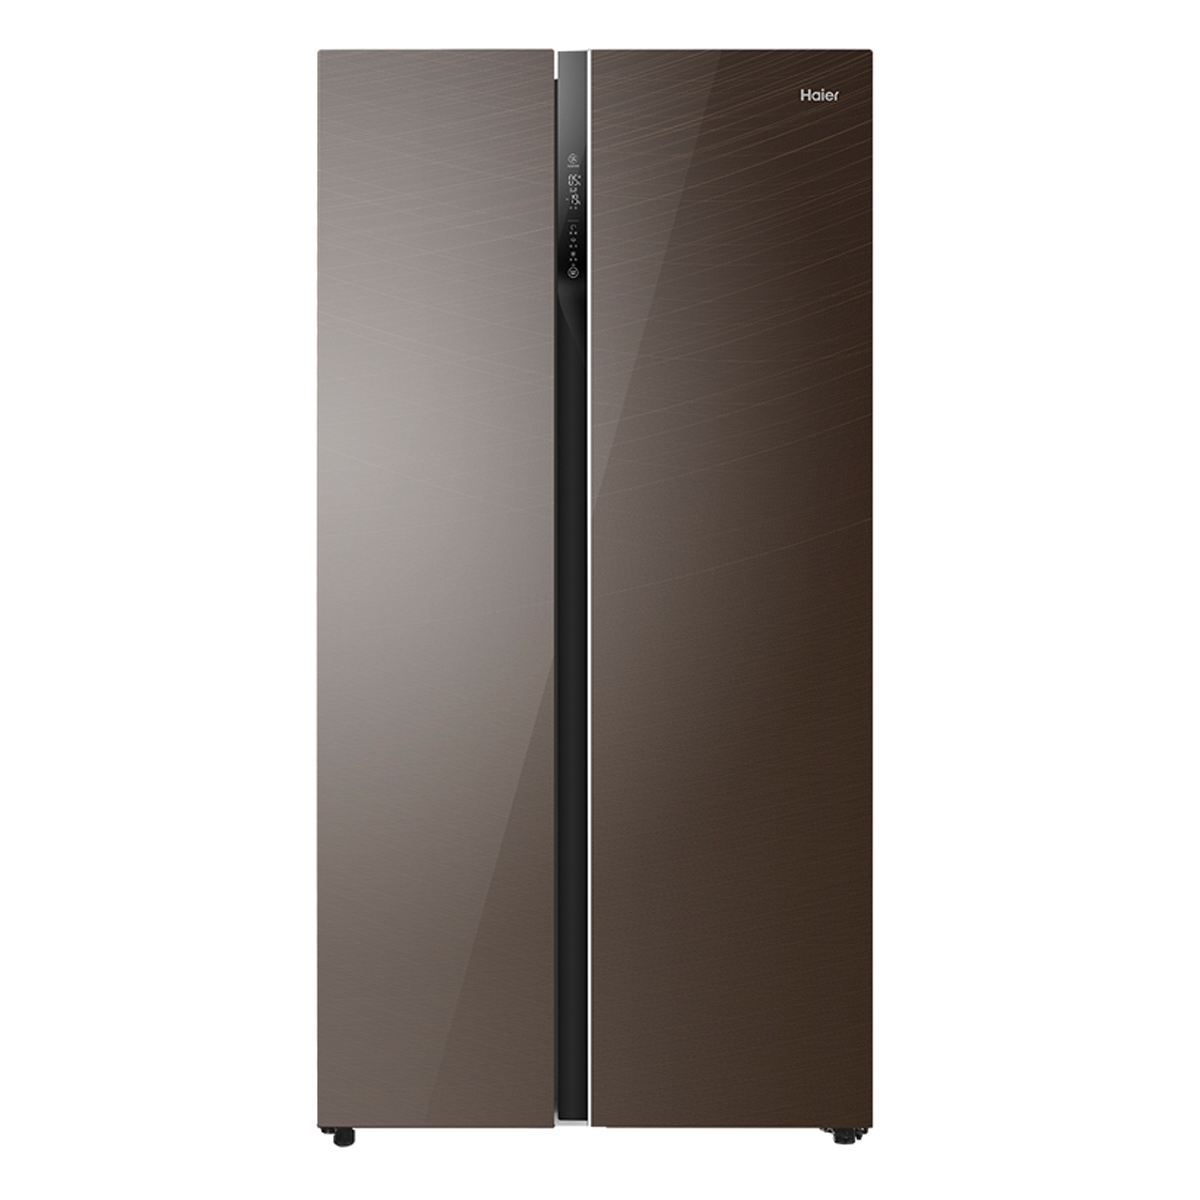 海尔Haier冰箱 BCD-540WDCG 说明书